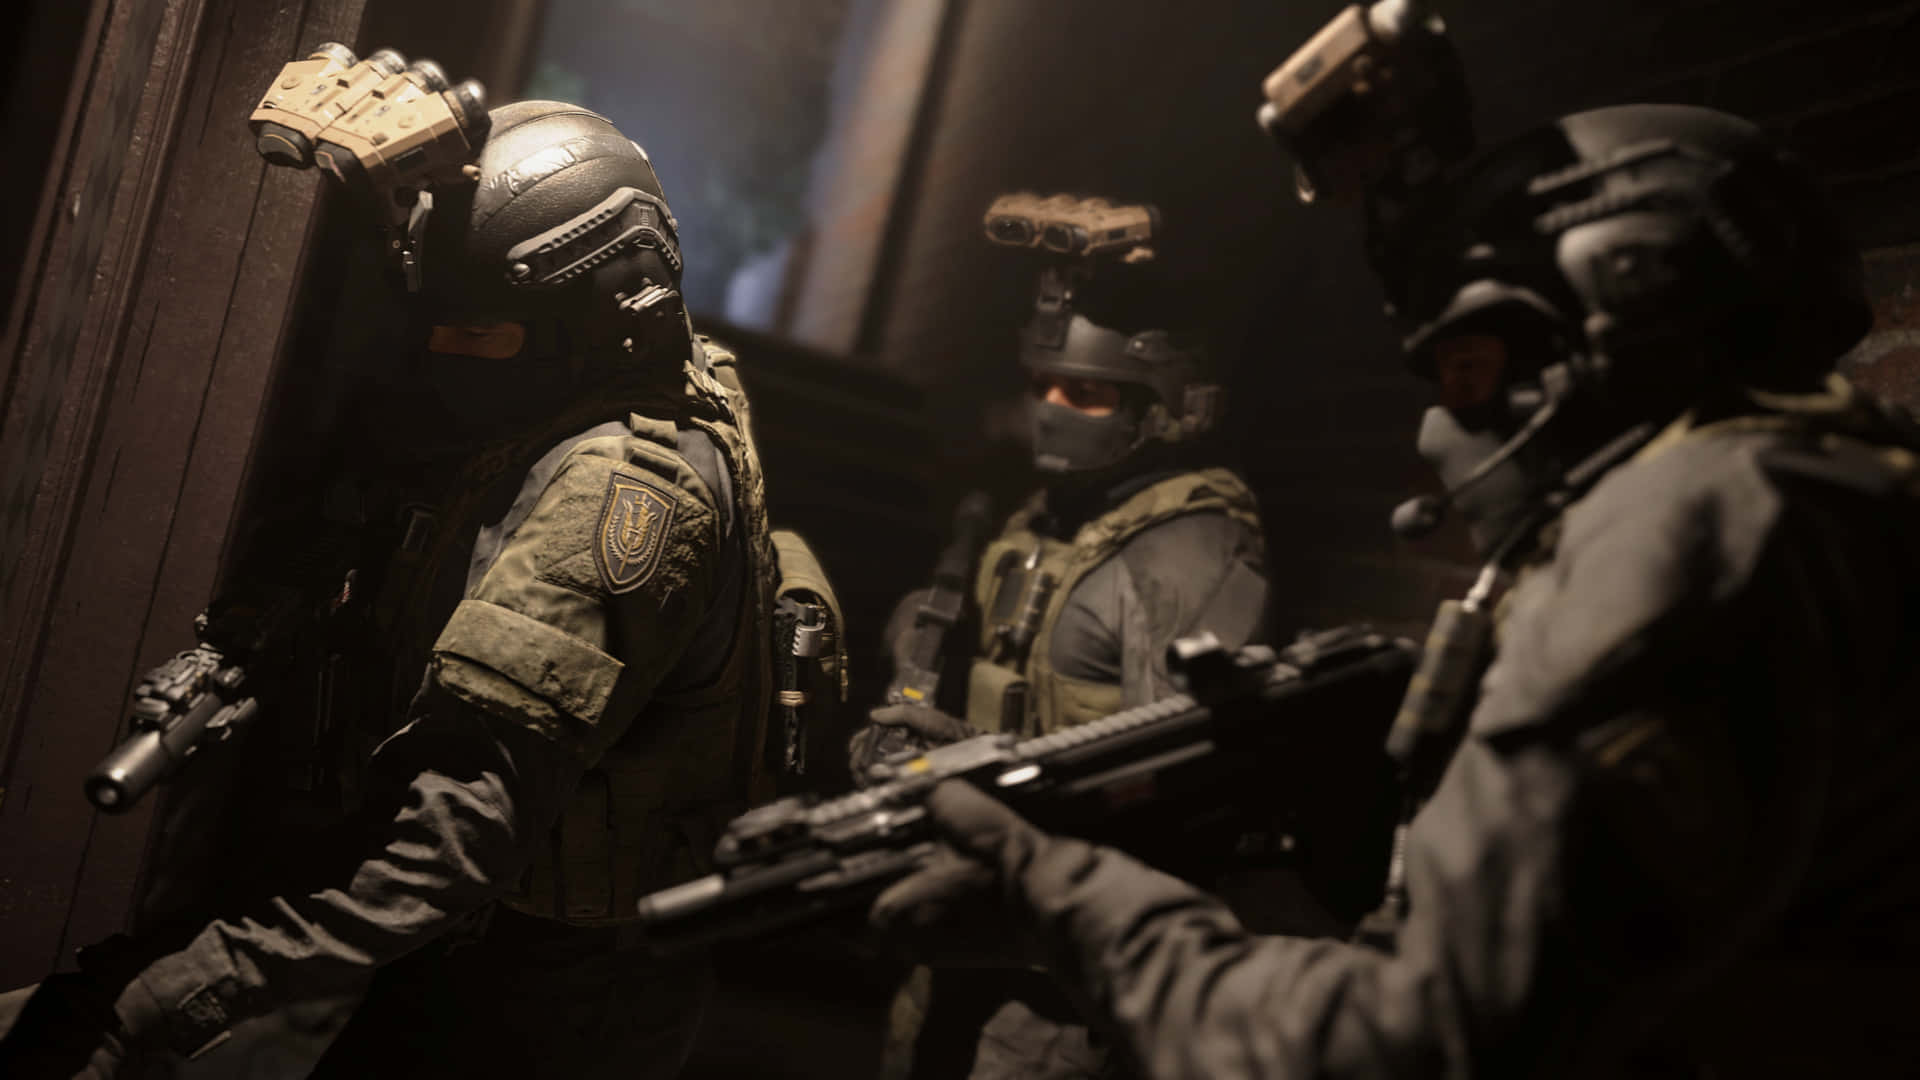 Preparatia Unirti Alla Battaglia Con Call Of Duty Modern Warfare.